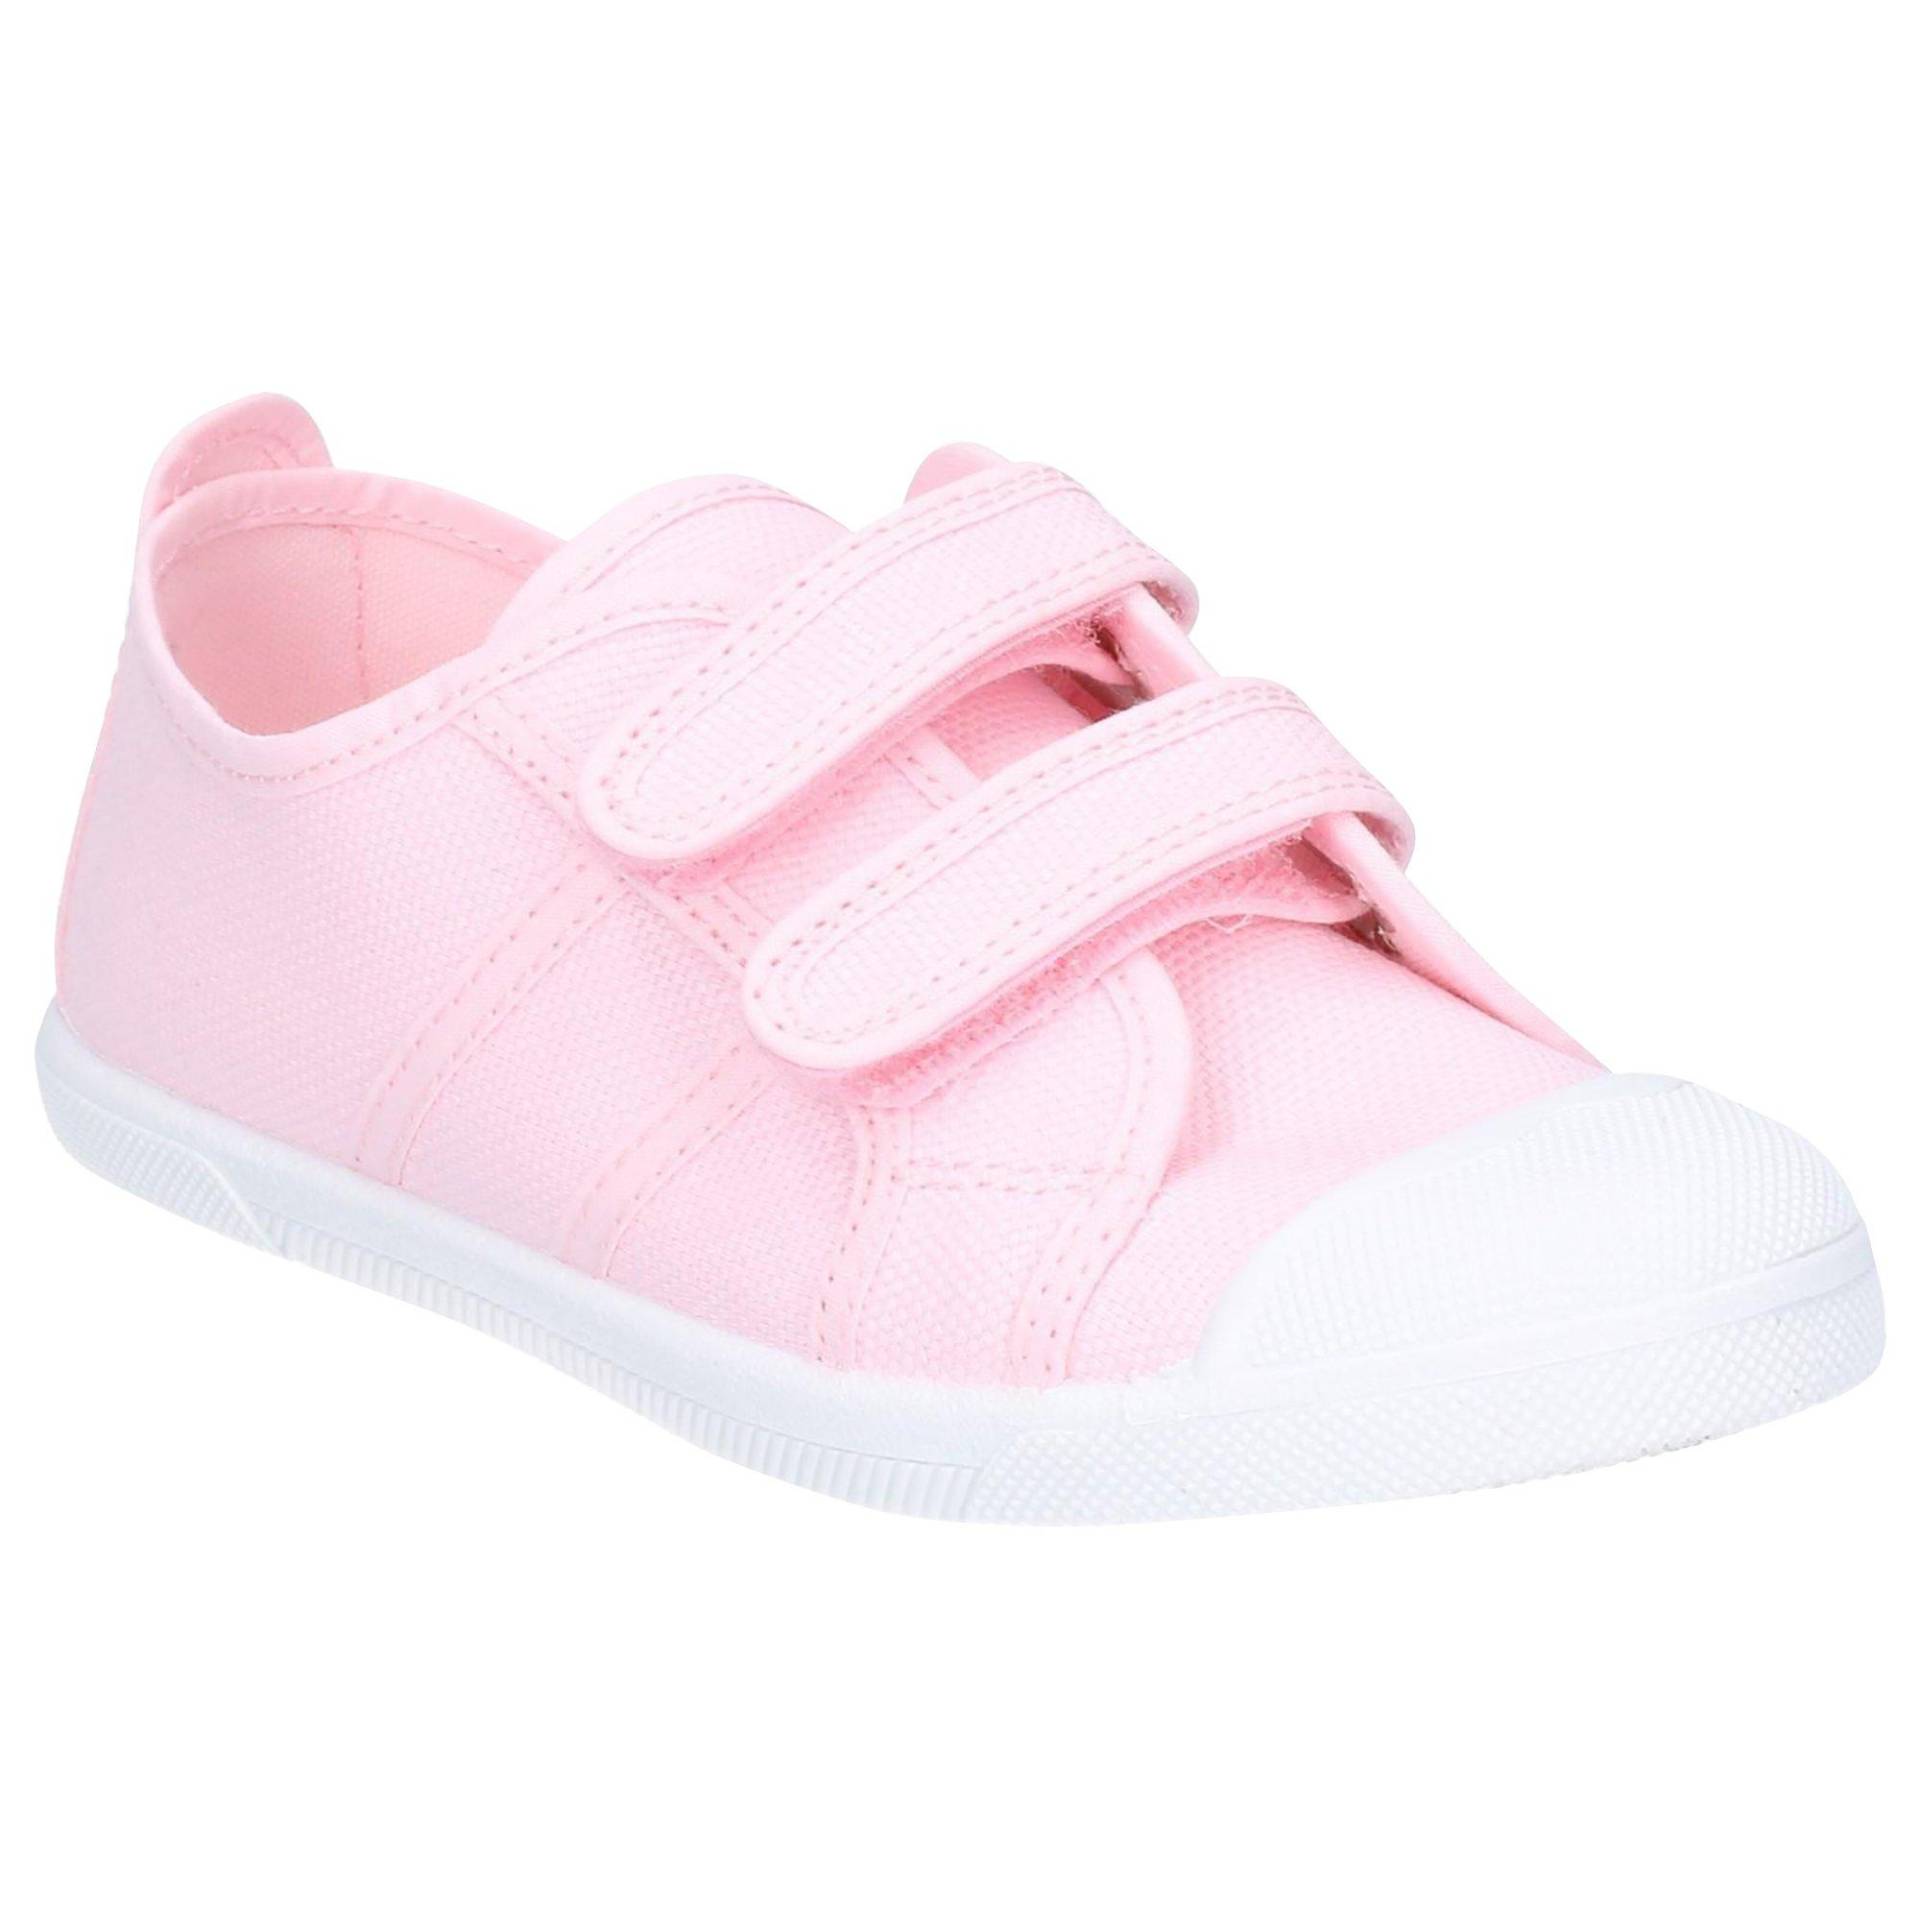 Schuhe Sasha Unisex Pink 32 von Flossy